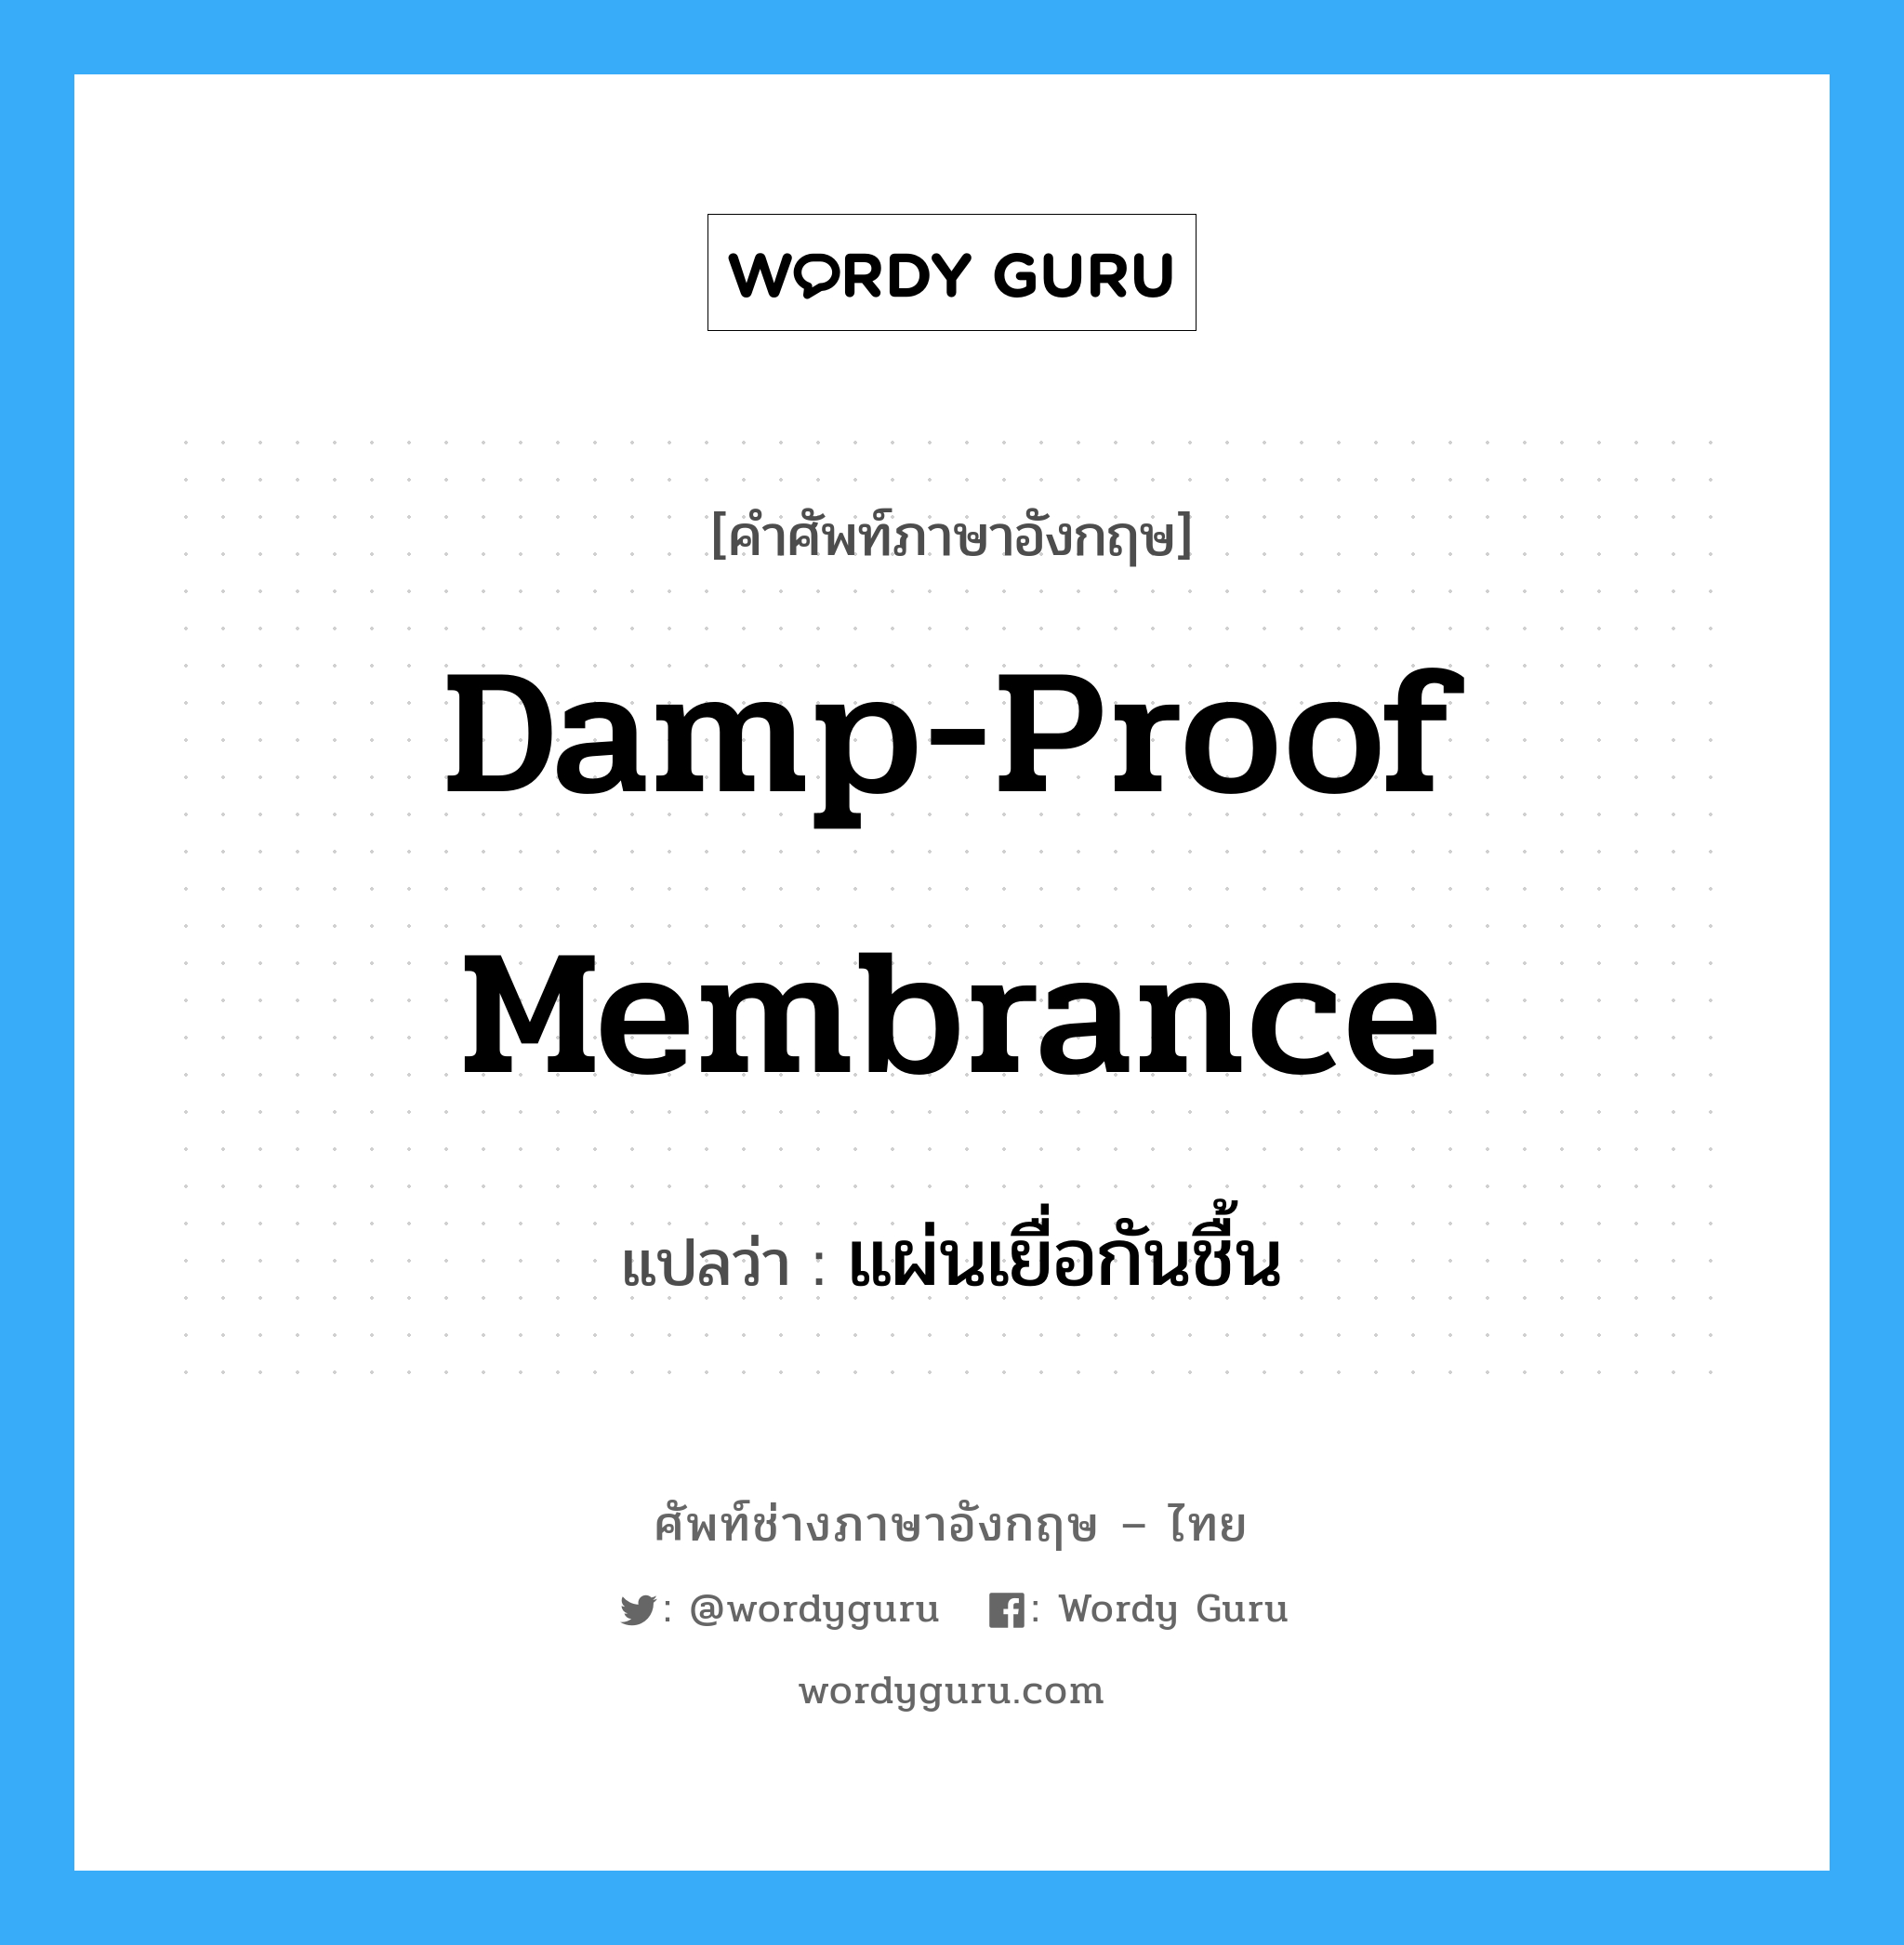 damp-proof membrance แปลว่า?, คำศัพท์ช่างภาษาอังกฤษ - ไทย damp-proof membrance คำศัพท์ภาษาอังกฤษ damp-proof membrance แปลว่า แผ่นเยื่อกันชื้น